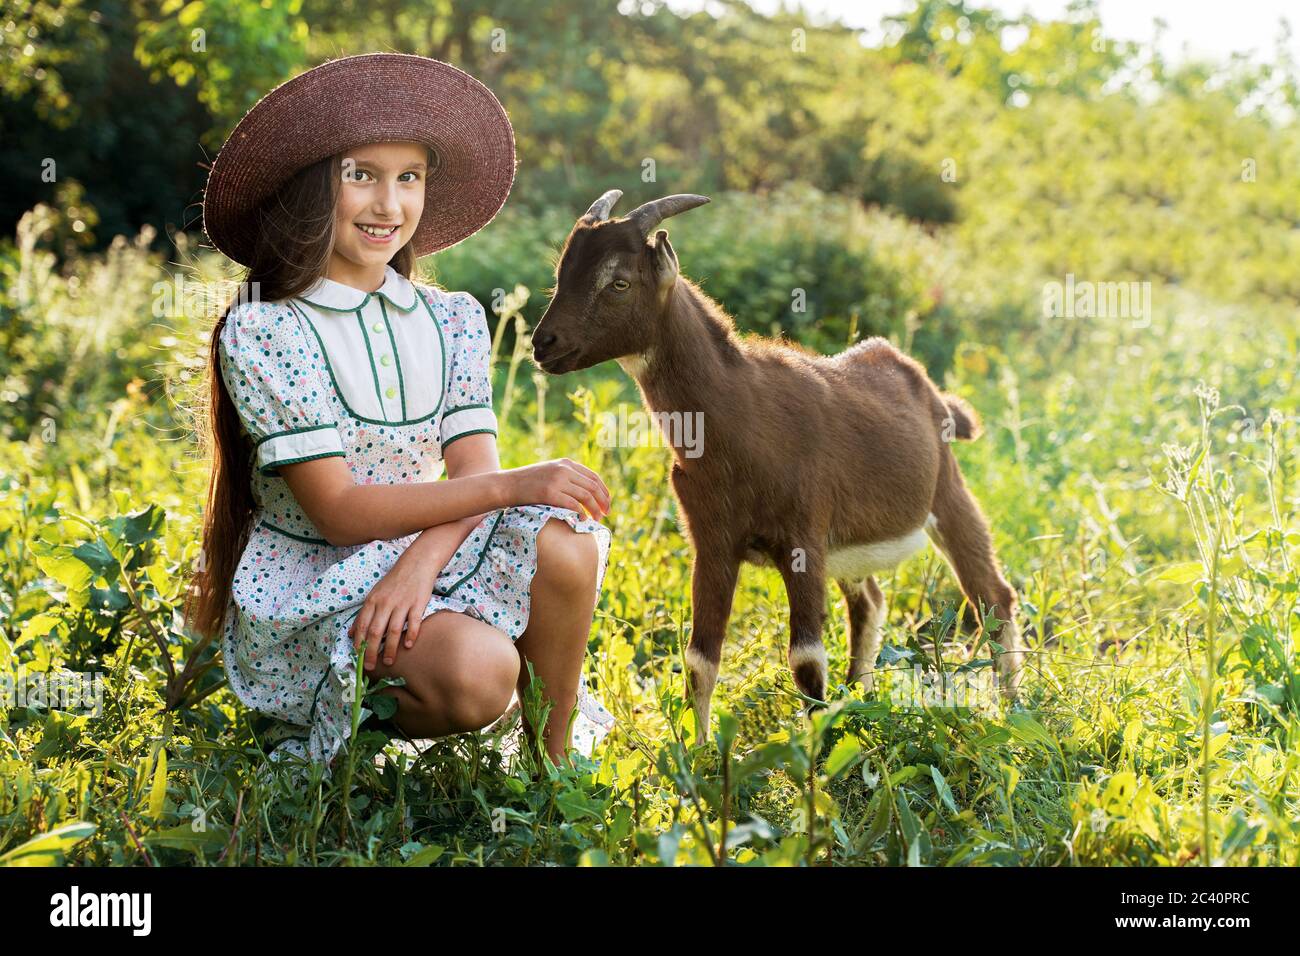 Ein kleines Mädchen in einem Hut hütet eine Ziege In einer grünen Wiese Stockfoto